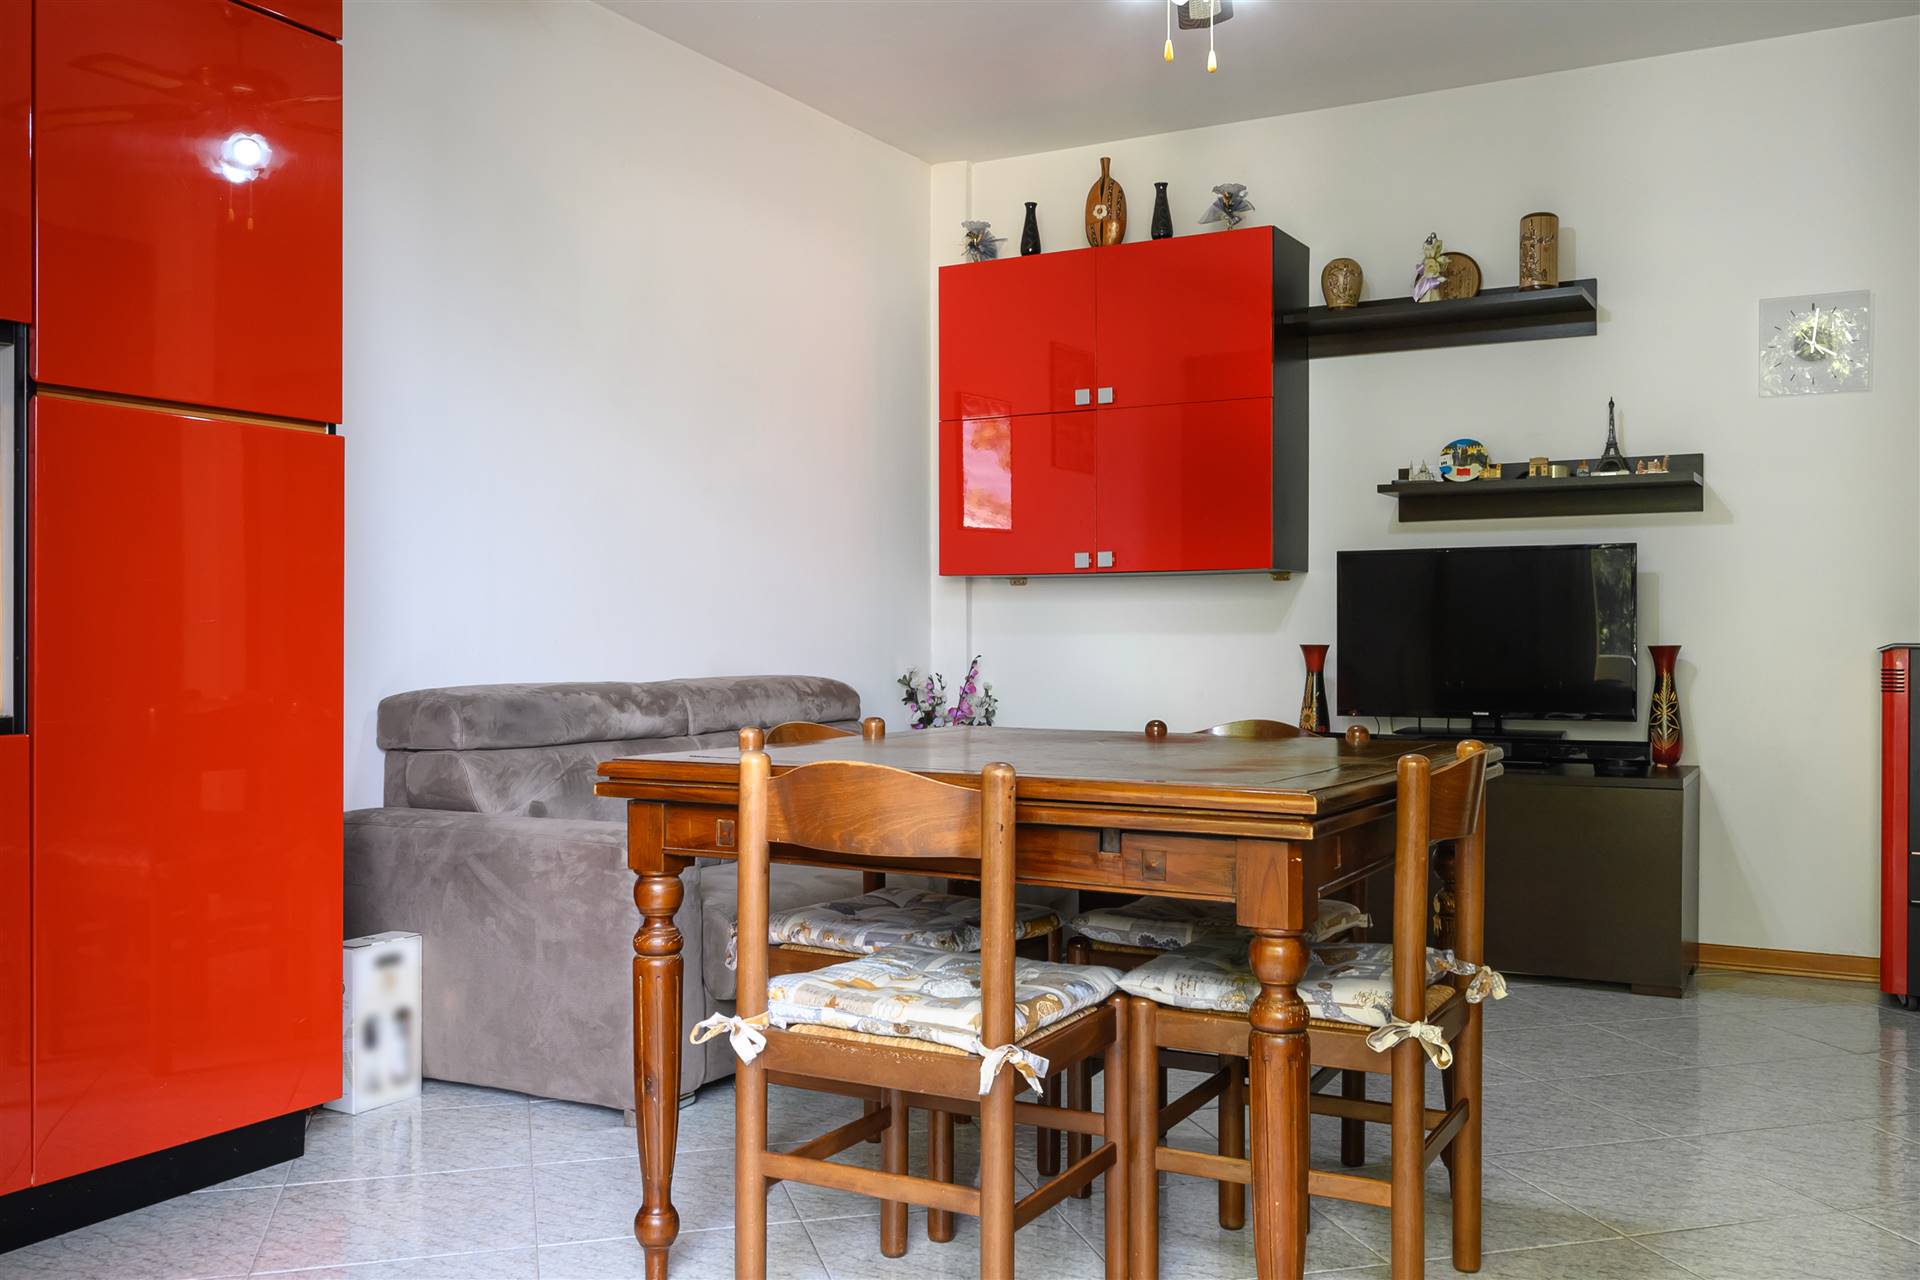 Appartamento in affitto a Bagnoli di Sopra, 2 locali, prezzo € 525 | CambioCasa.it